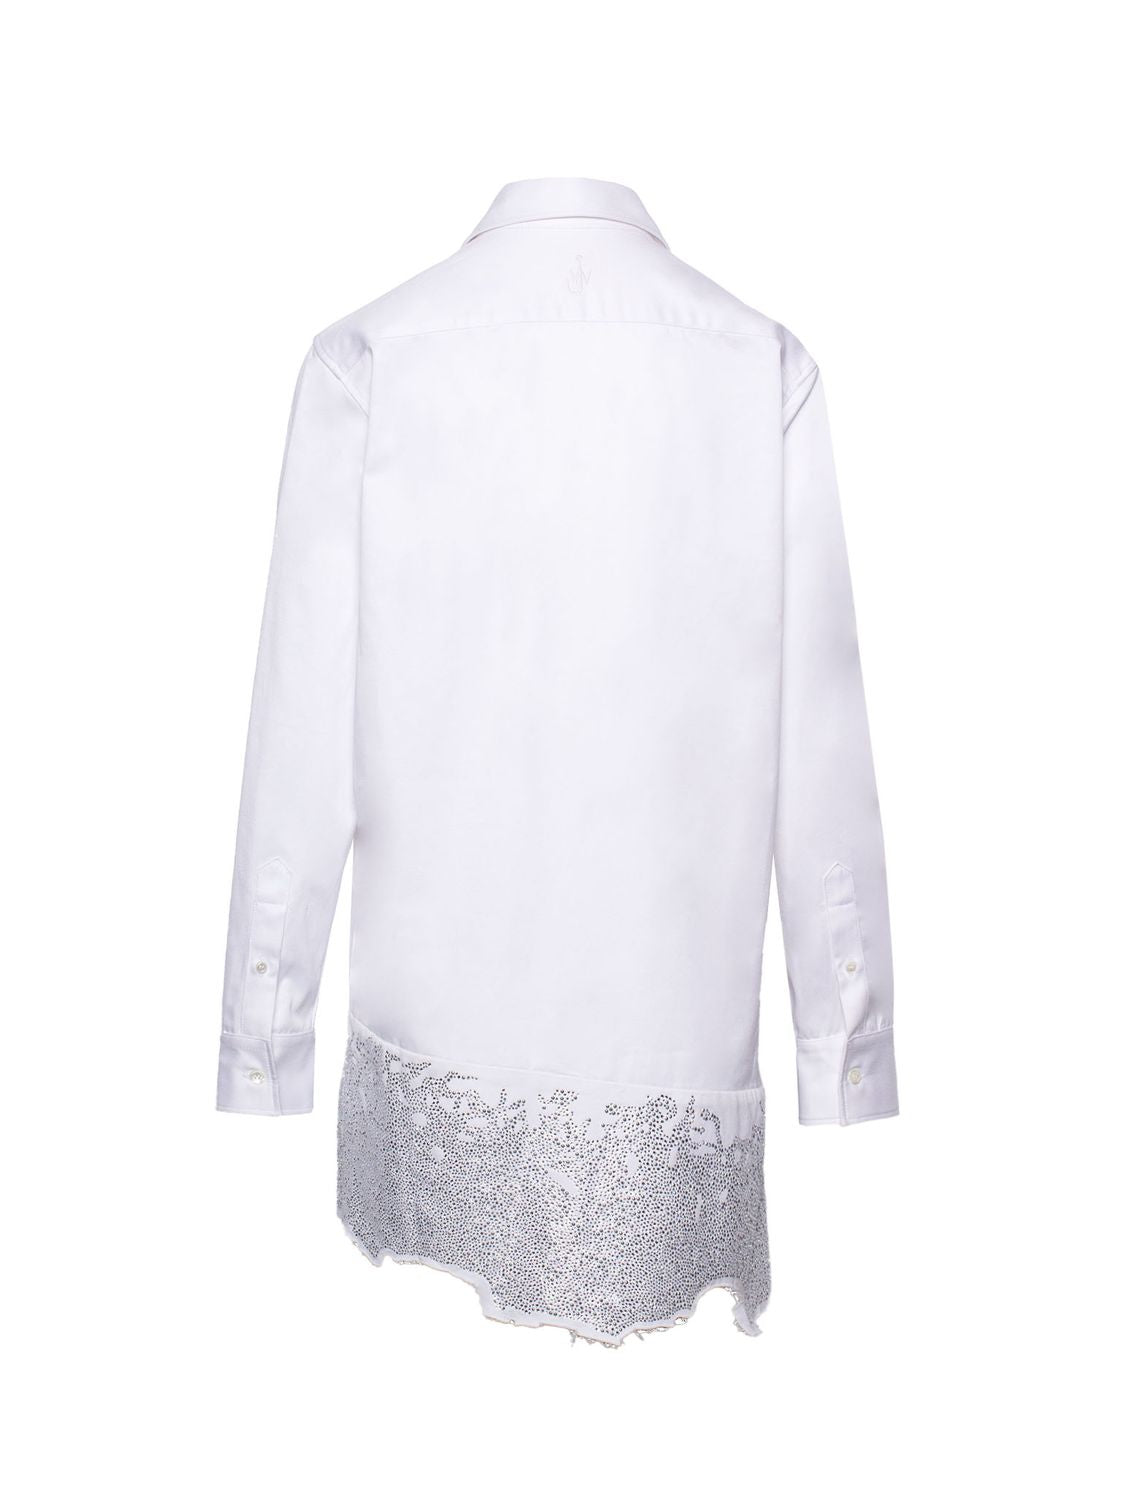 クリスタル装飾の入ったコットンシャツドレス ホワイト